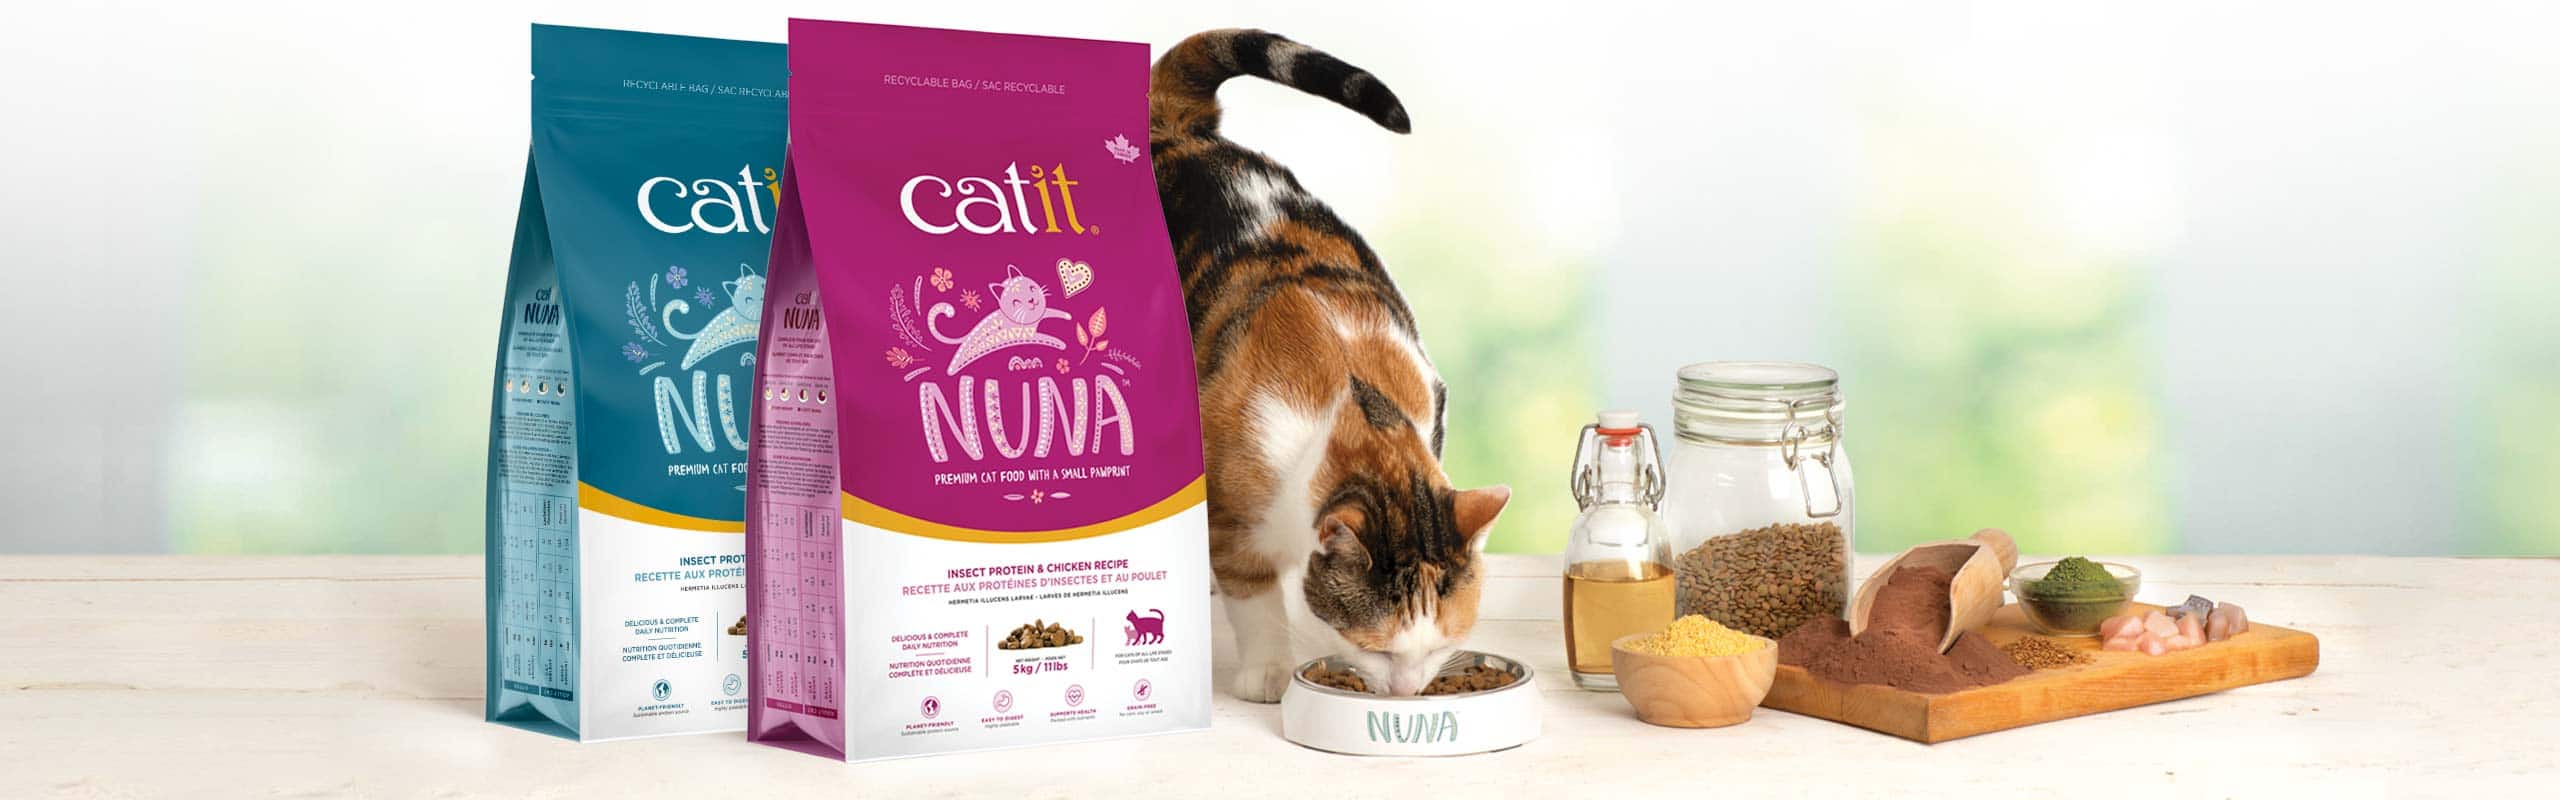 Catit Nuna cat food